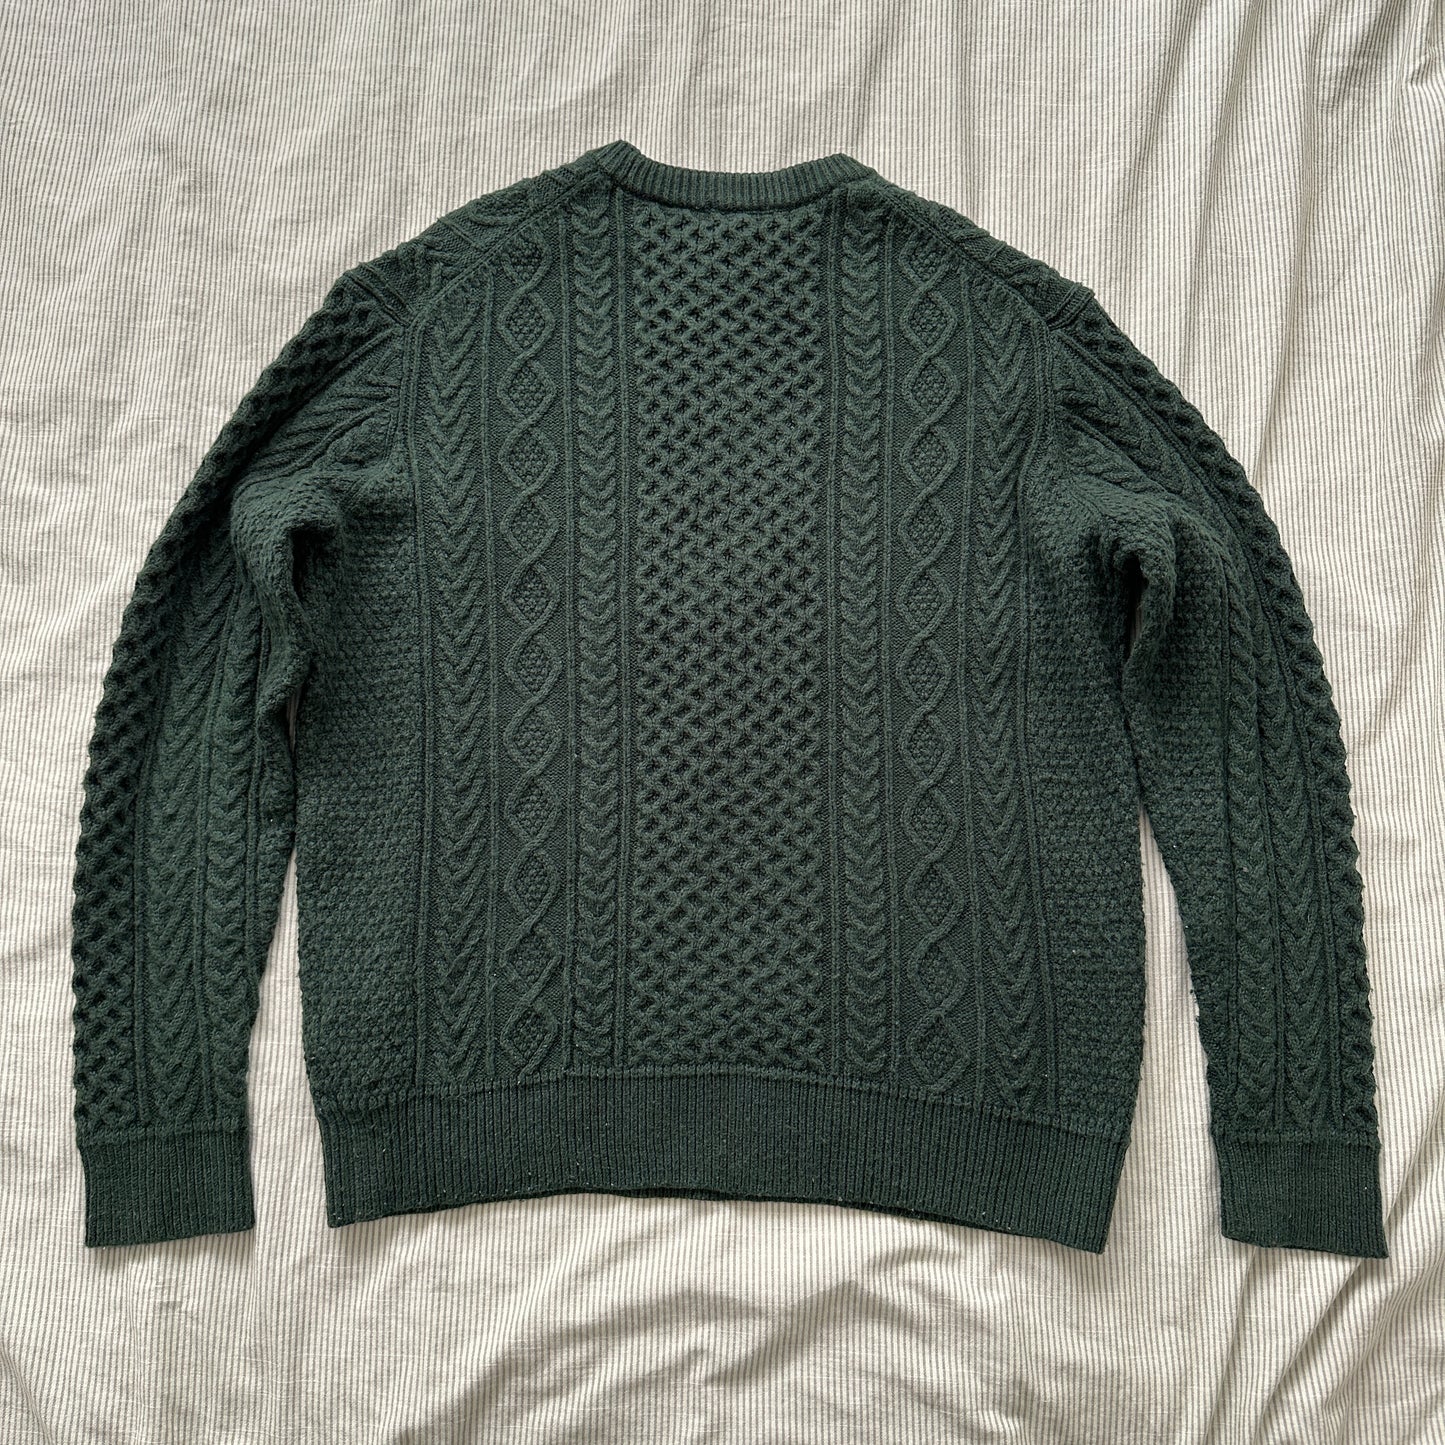 Uniqlo Knits-Sweater